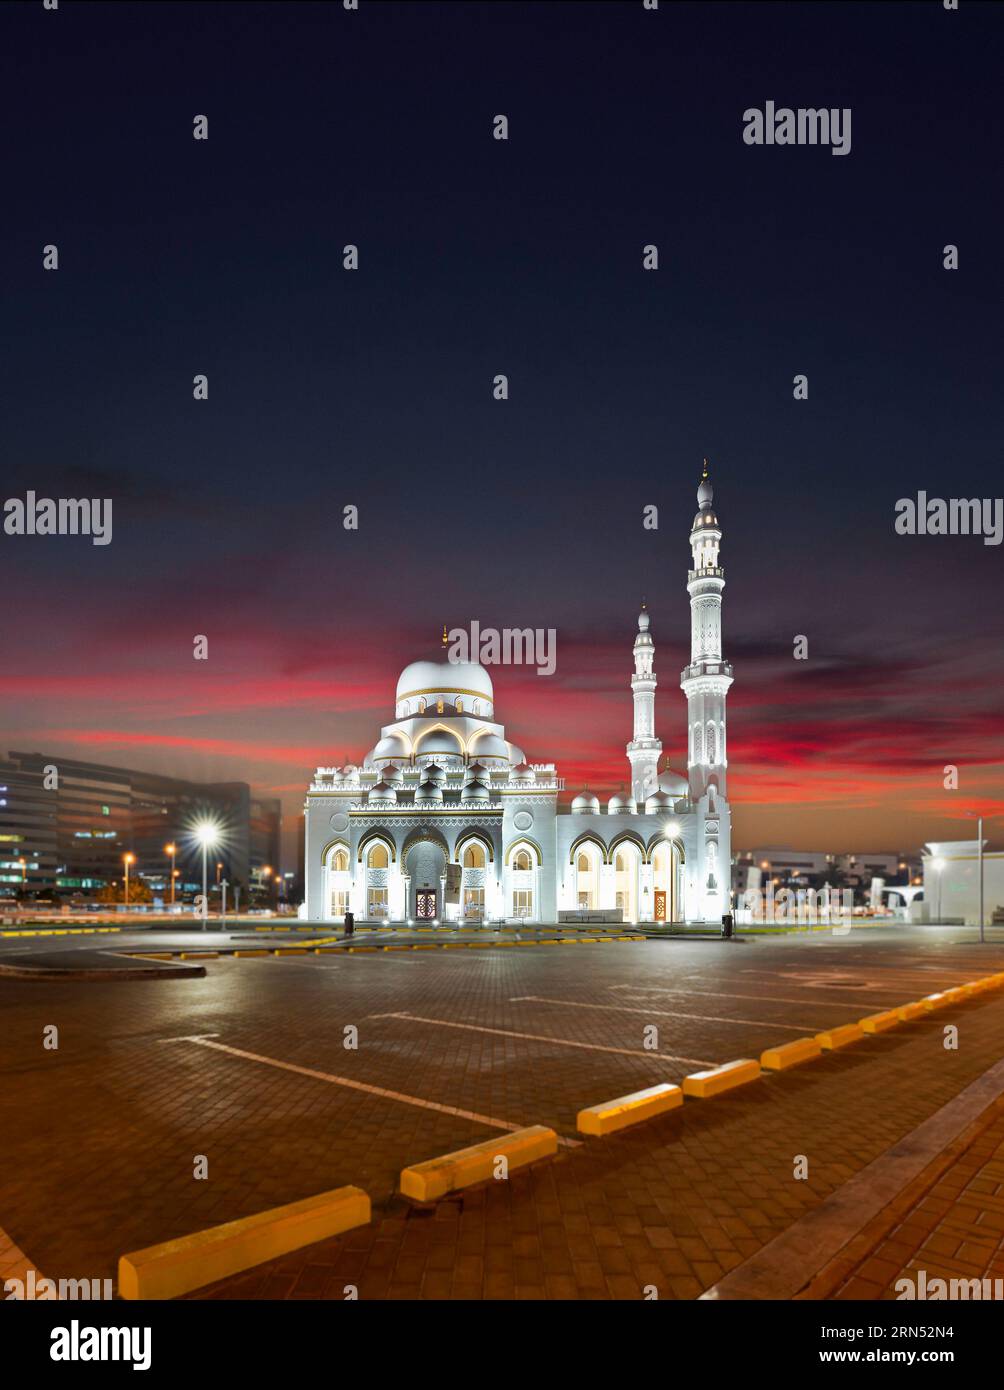 Una bella moschea di recente costruzione nel centro di un'area chiamata Satwa a Dubai. Foto Stock